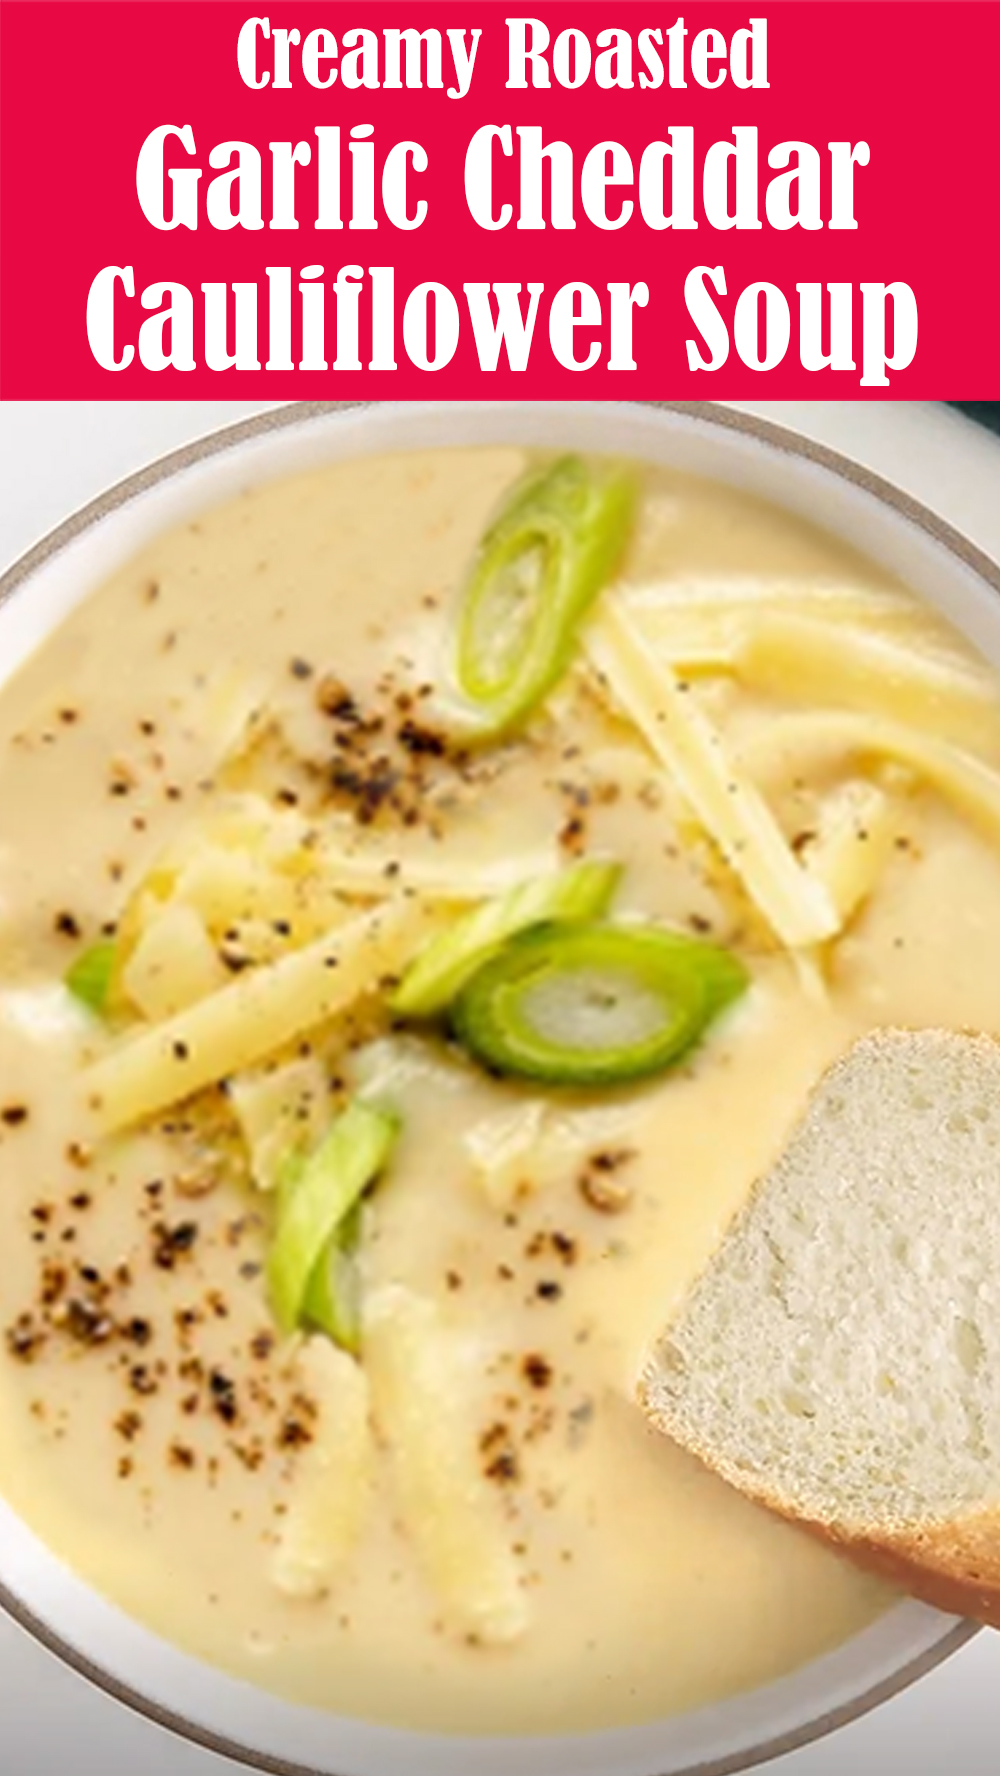 Creamy Roasted Garlic Cheddar Cauliflower Soup